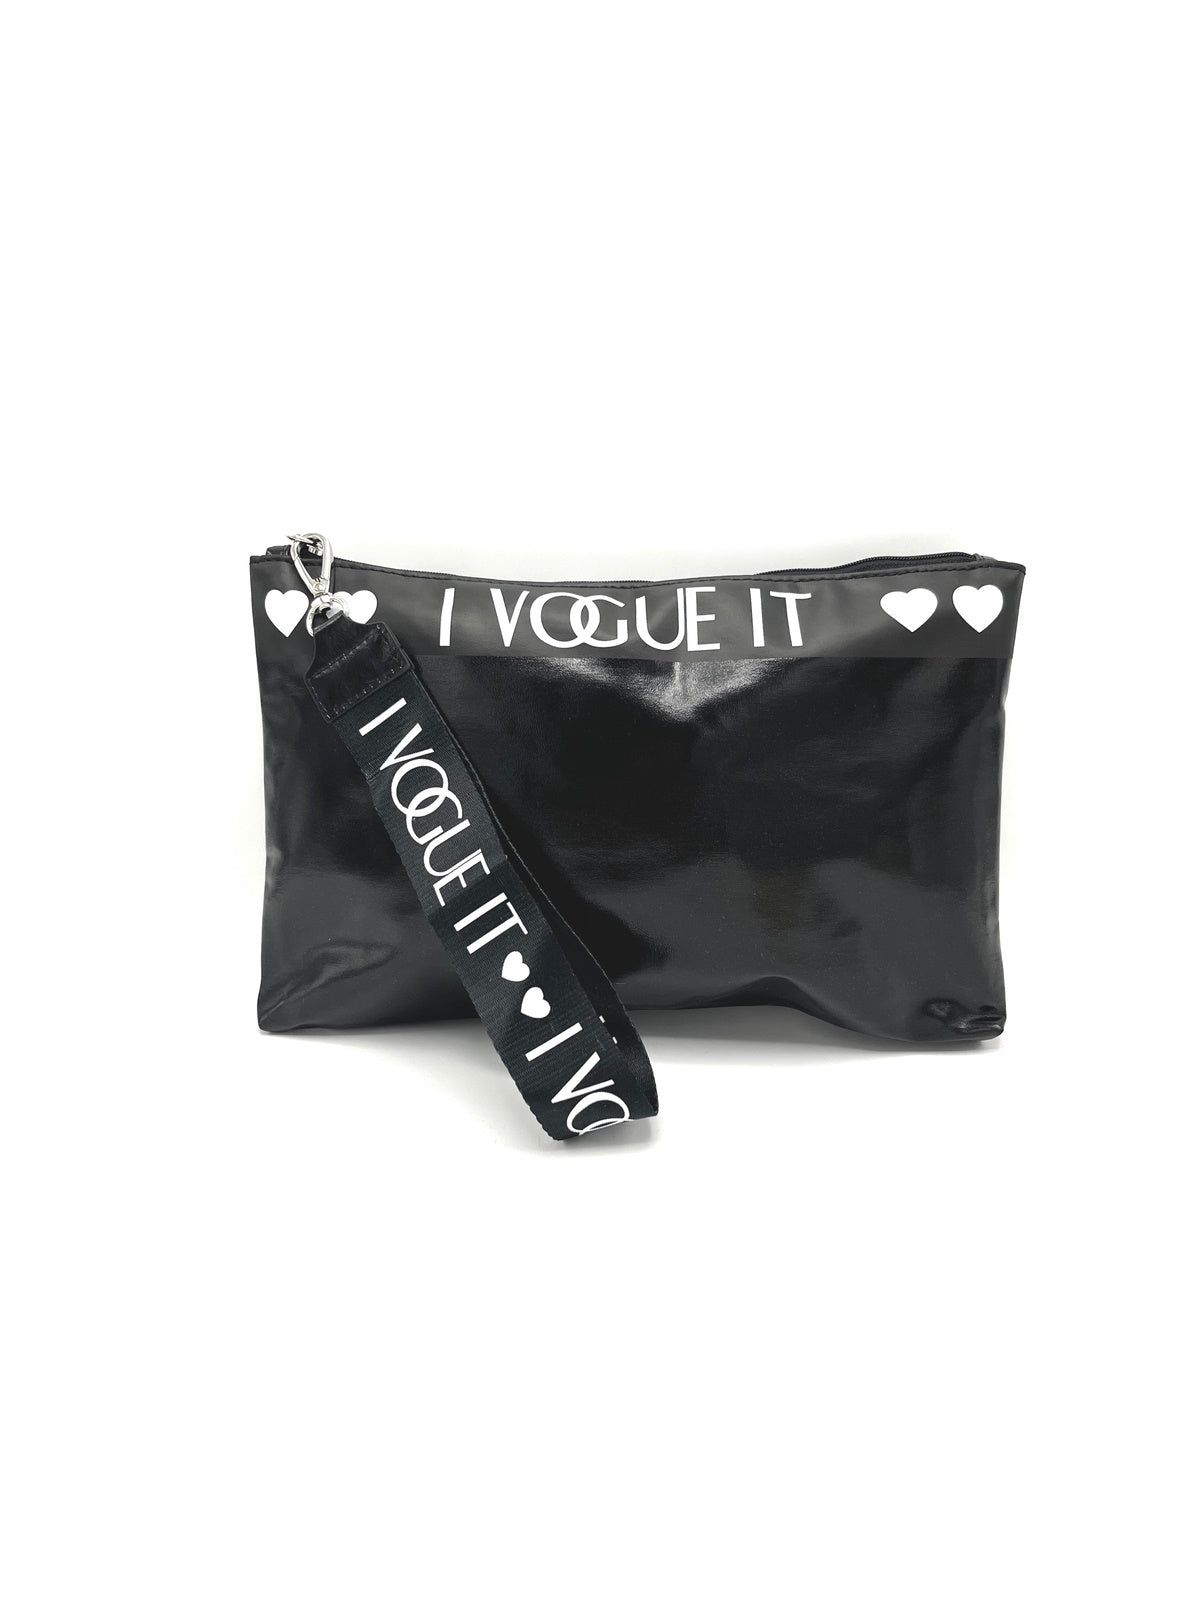 Eco-leather beauty bag, brand I Vogue It, art. 20343.364